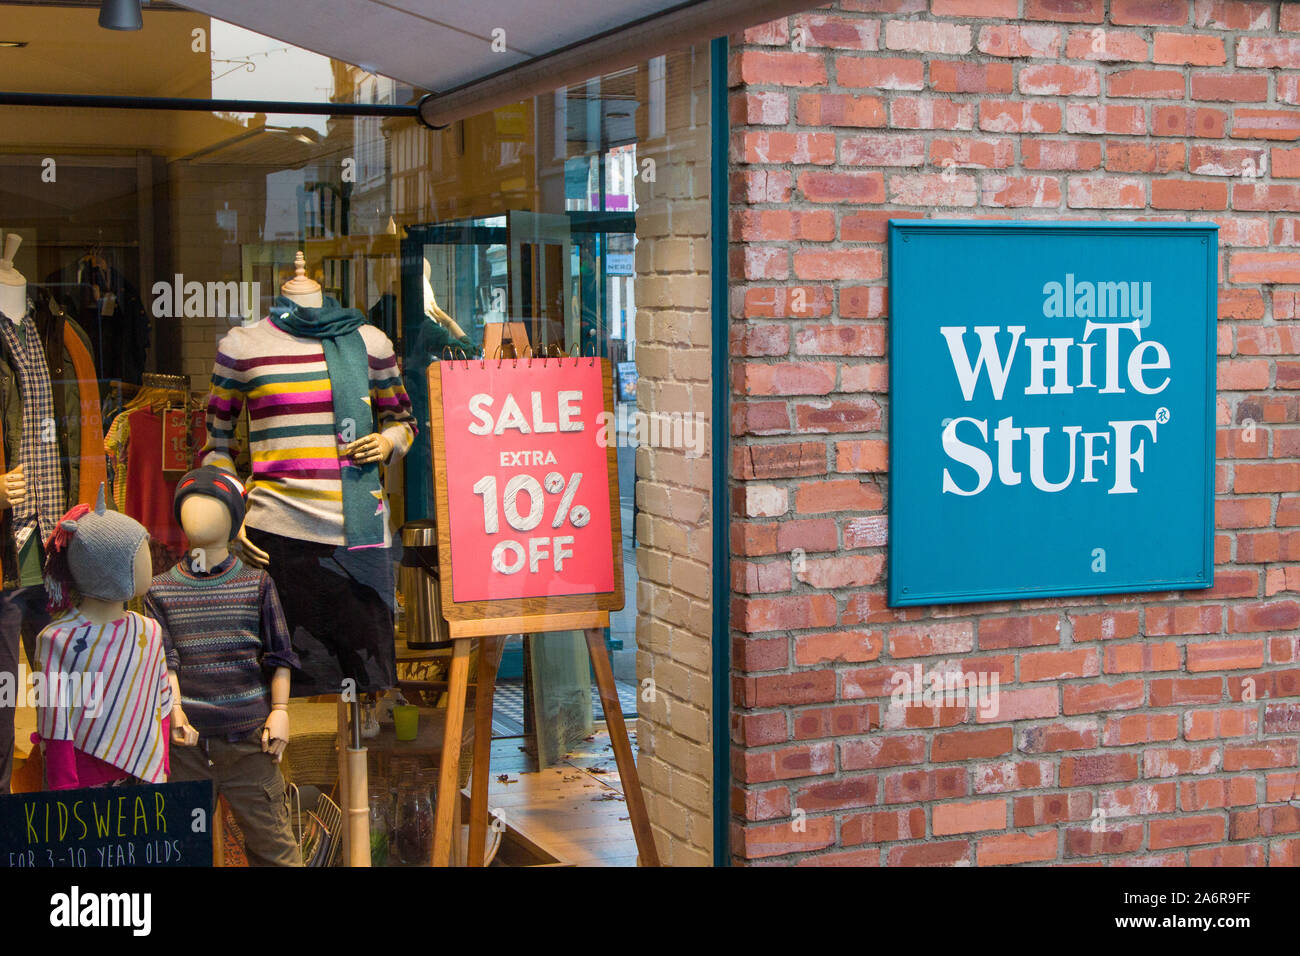 La vitrine du magasin de vêtements blancs Stuff in Henley-on-Thames avec un signe pour une vente "Extra 10 % Off' Banque D'Images